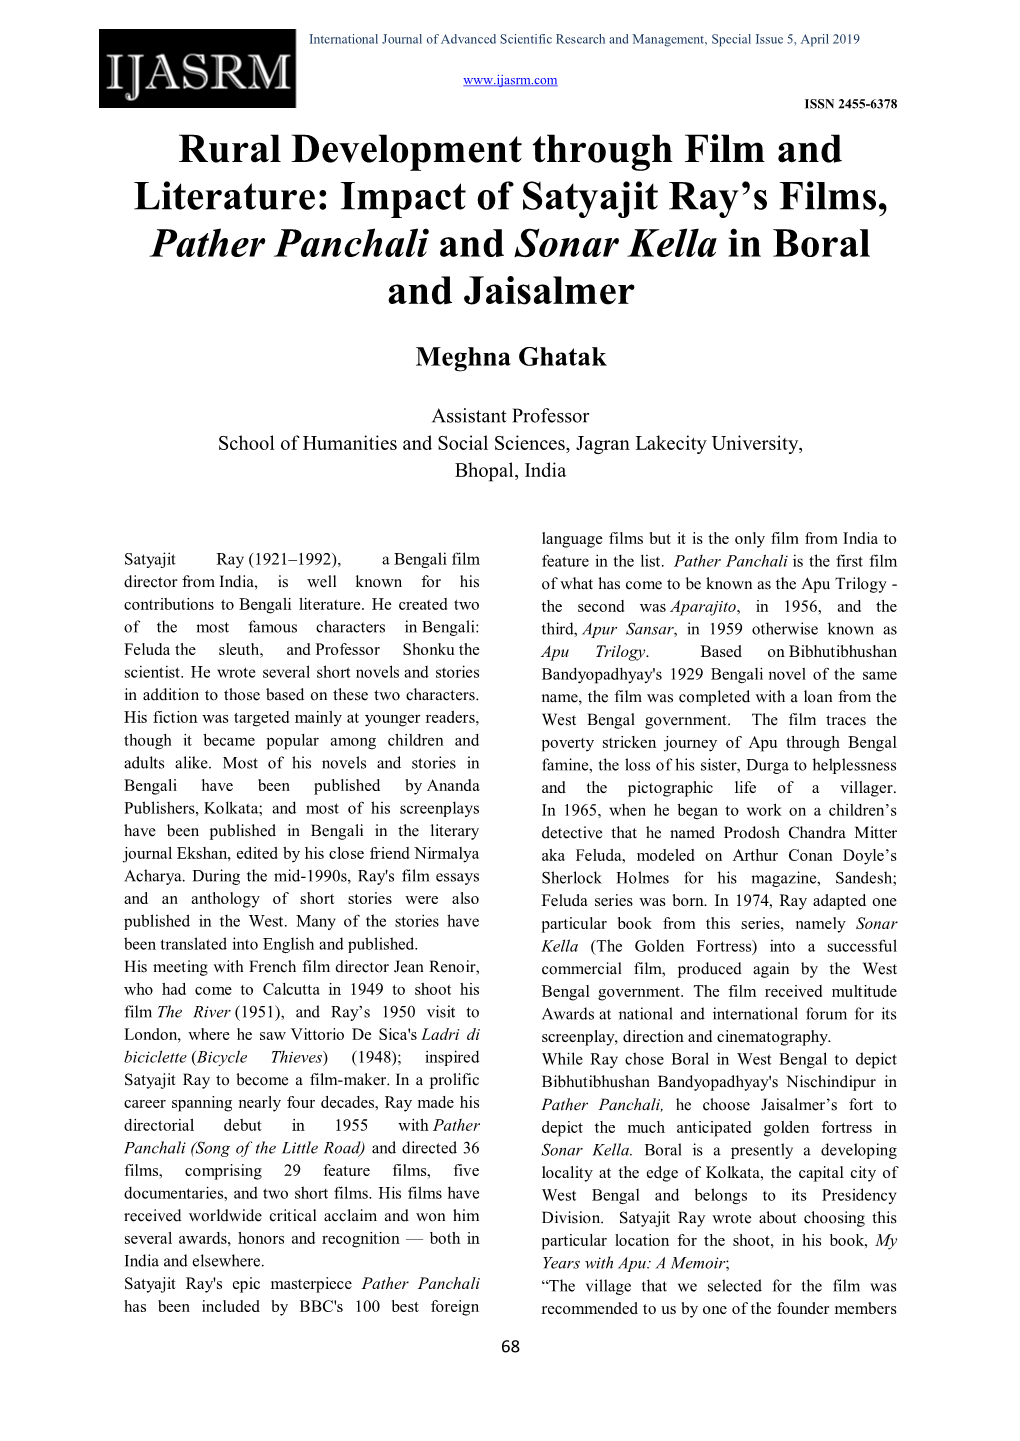 Impact of Satyajit Ray's Films, Pather Panchali and Sonar Kella